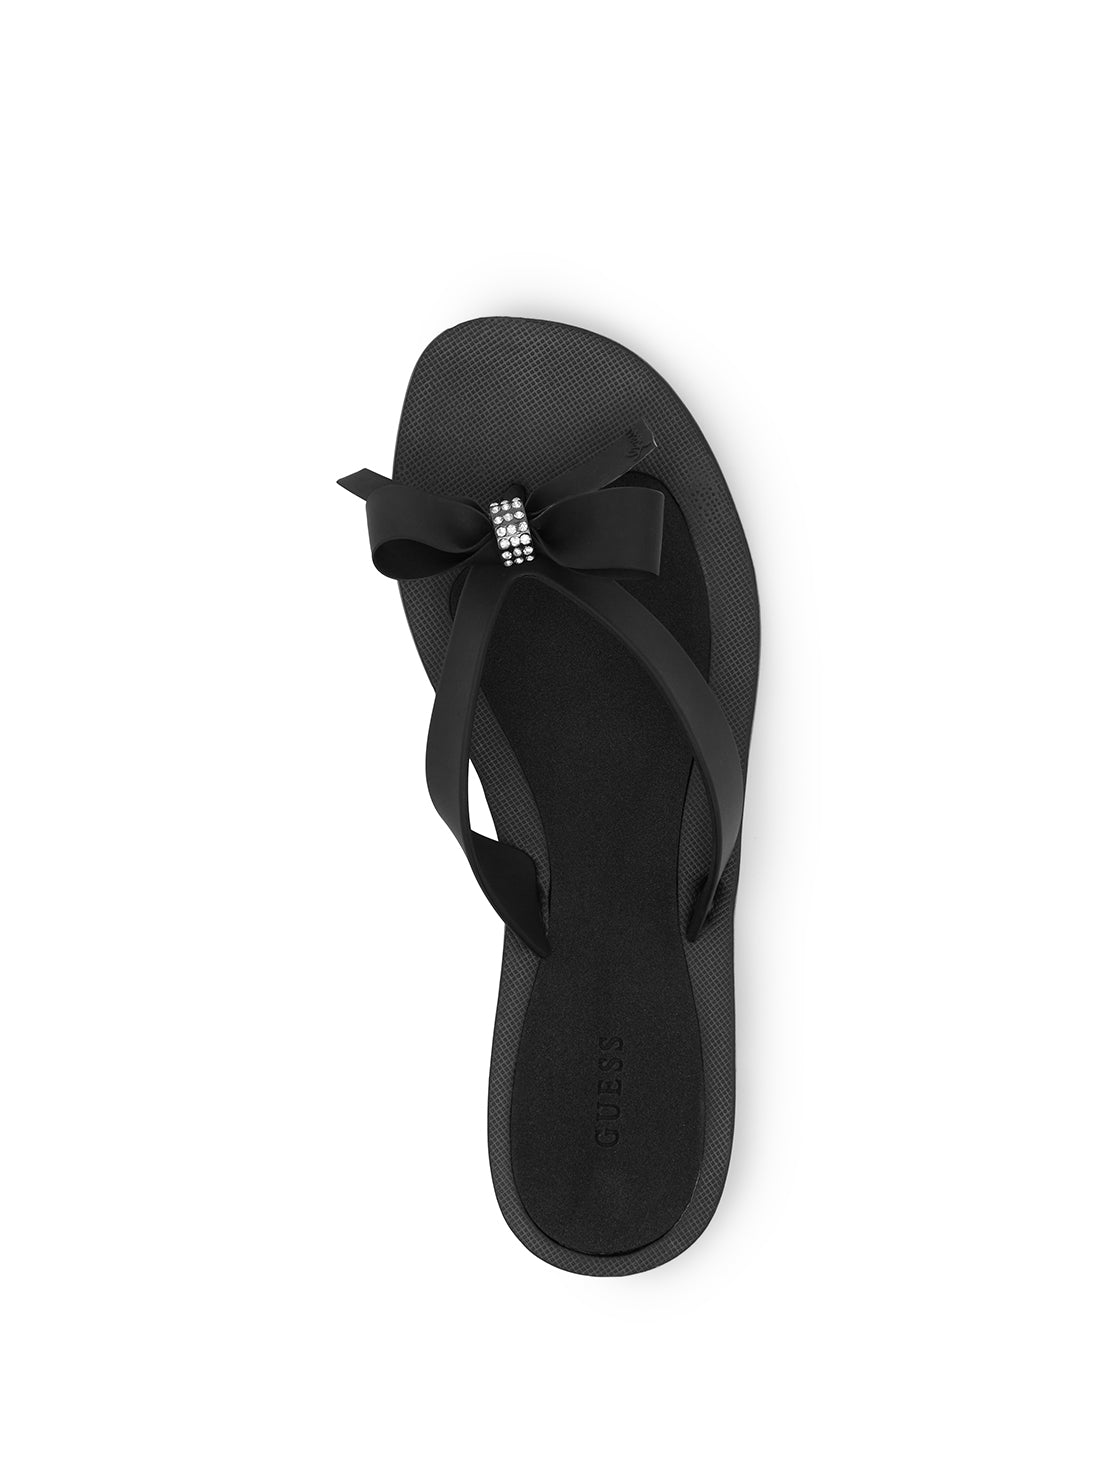 Black Tutu Bow Sandals